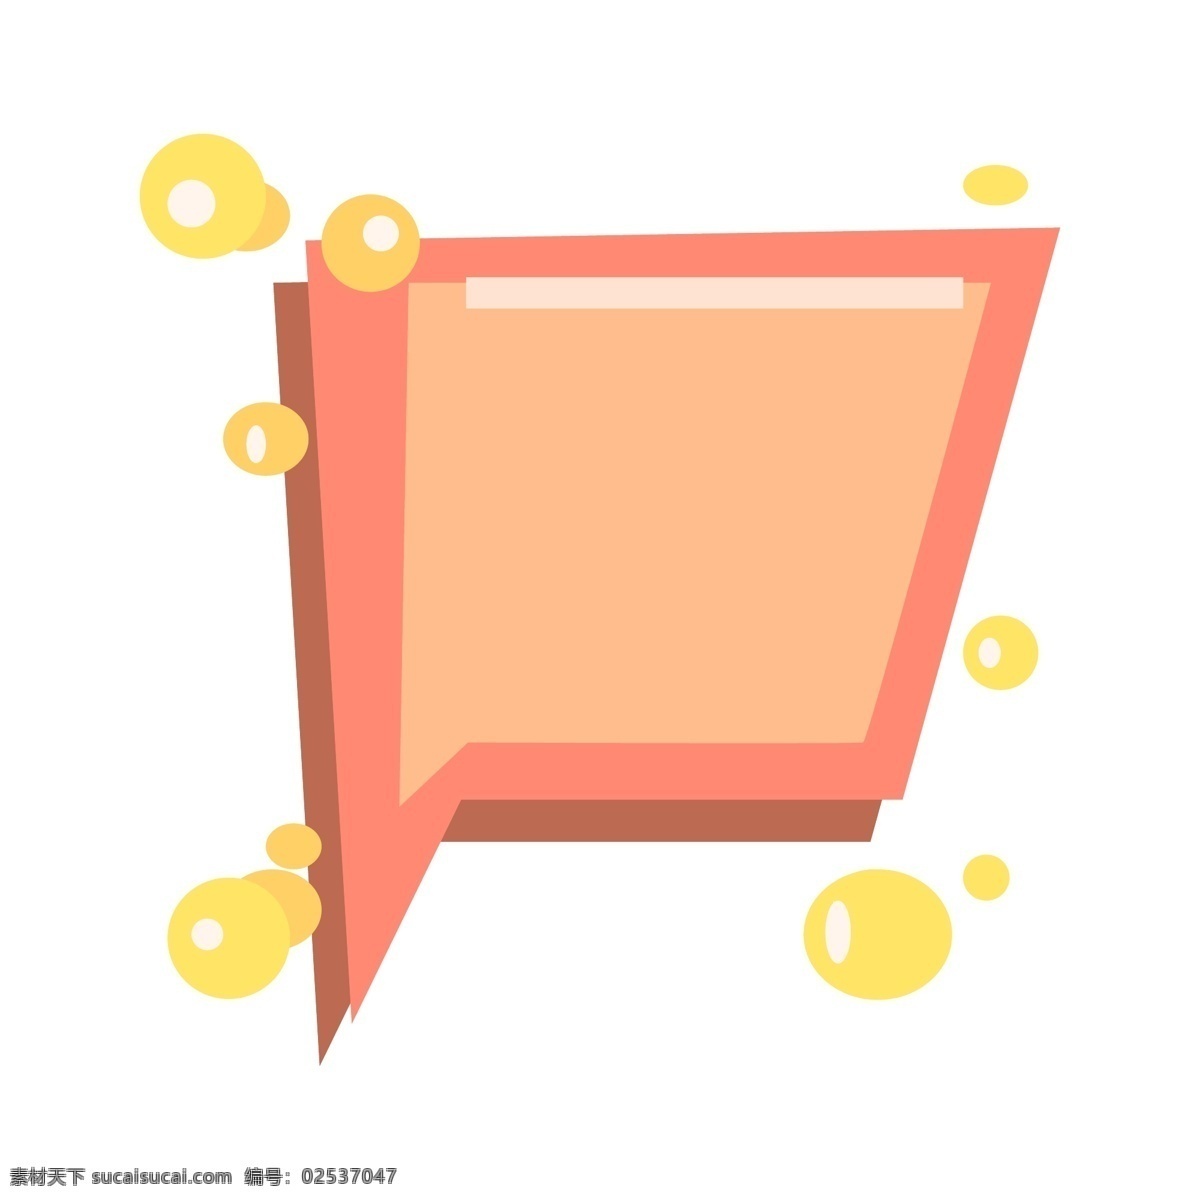 橘 色 边框 对话框 黄色气泡 粉色边框